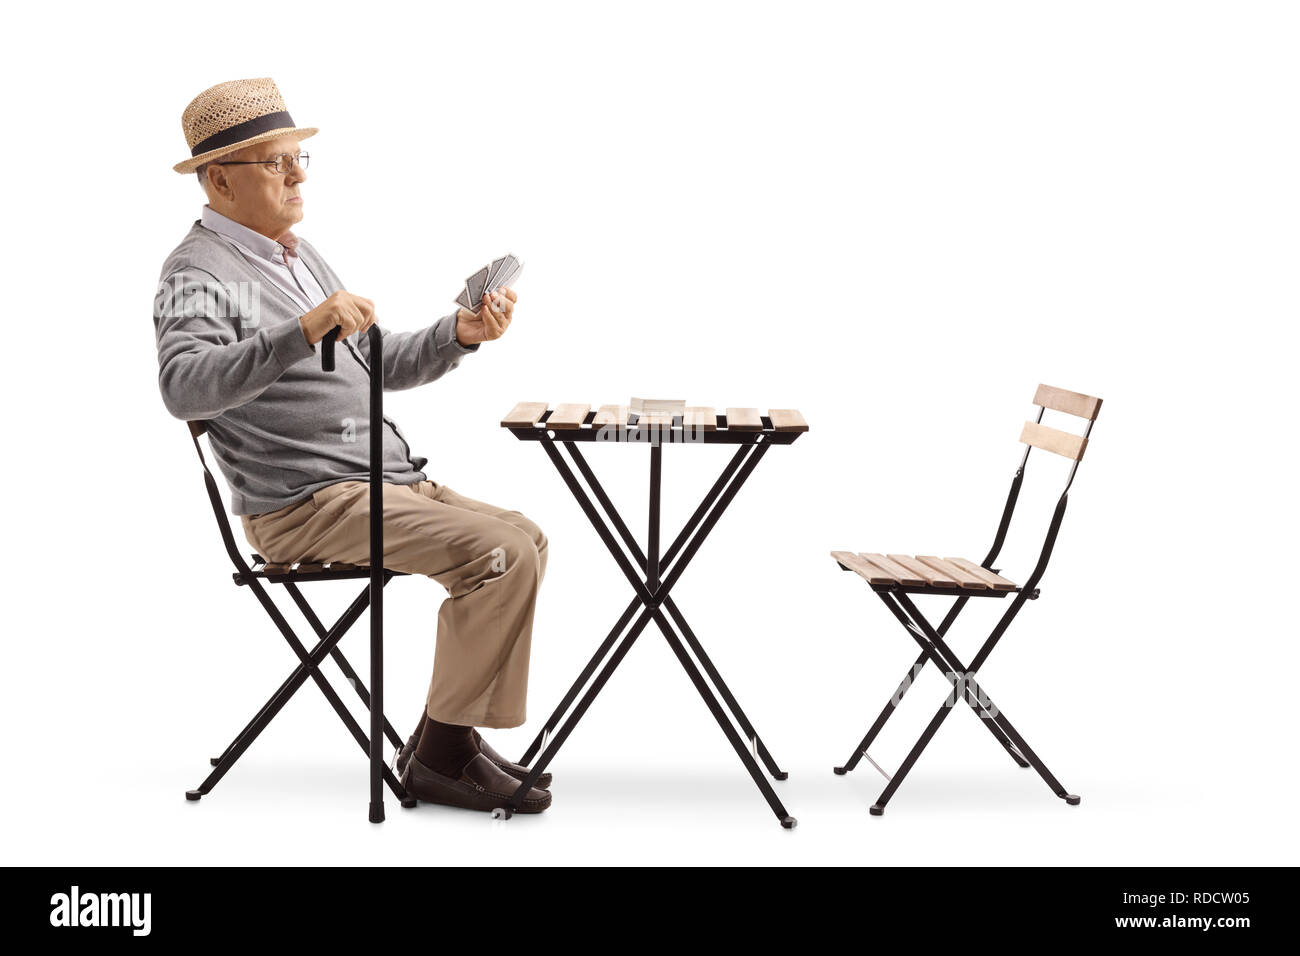 volle-lange-schuss-ein-alterer-mann-mit-einem-stock-an-einem-tisch-sitzen-und-karten-spielen-allein-isoliert-auf-weissem-hintergrund-rdcw05.jpg